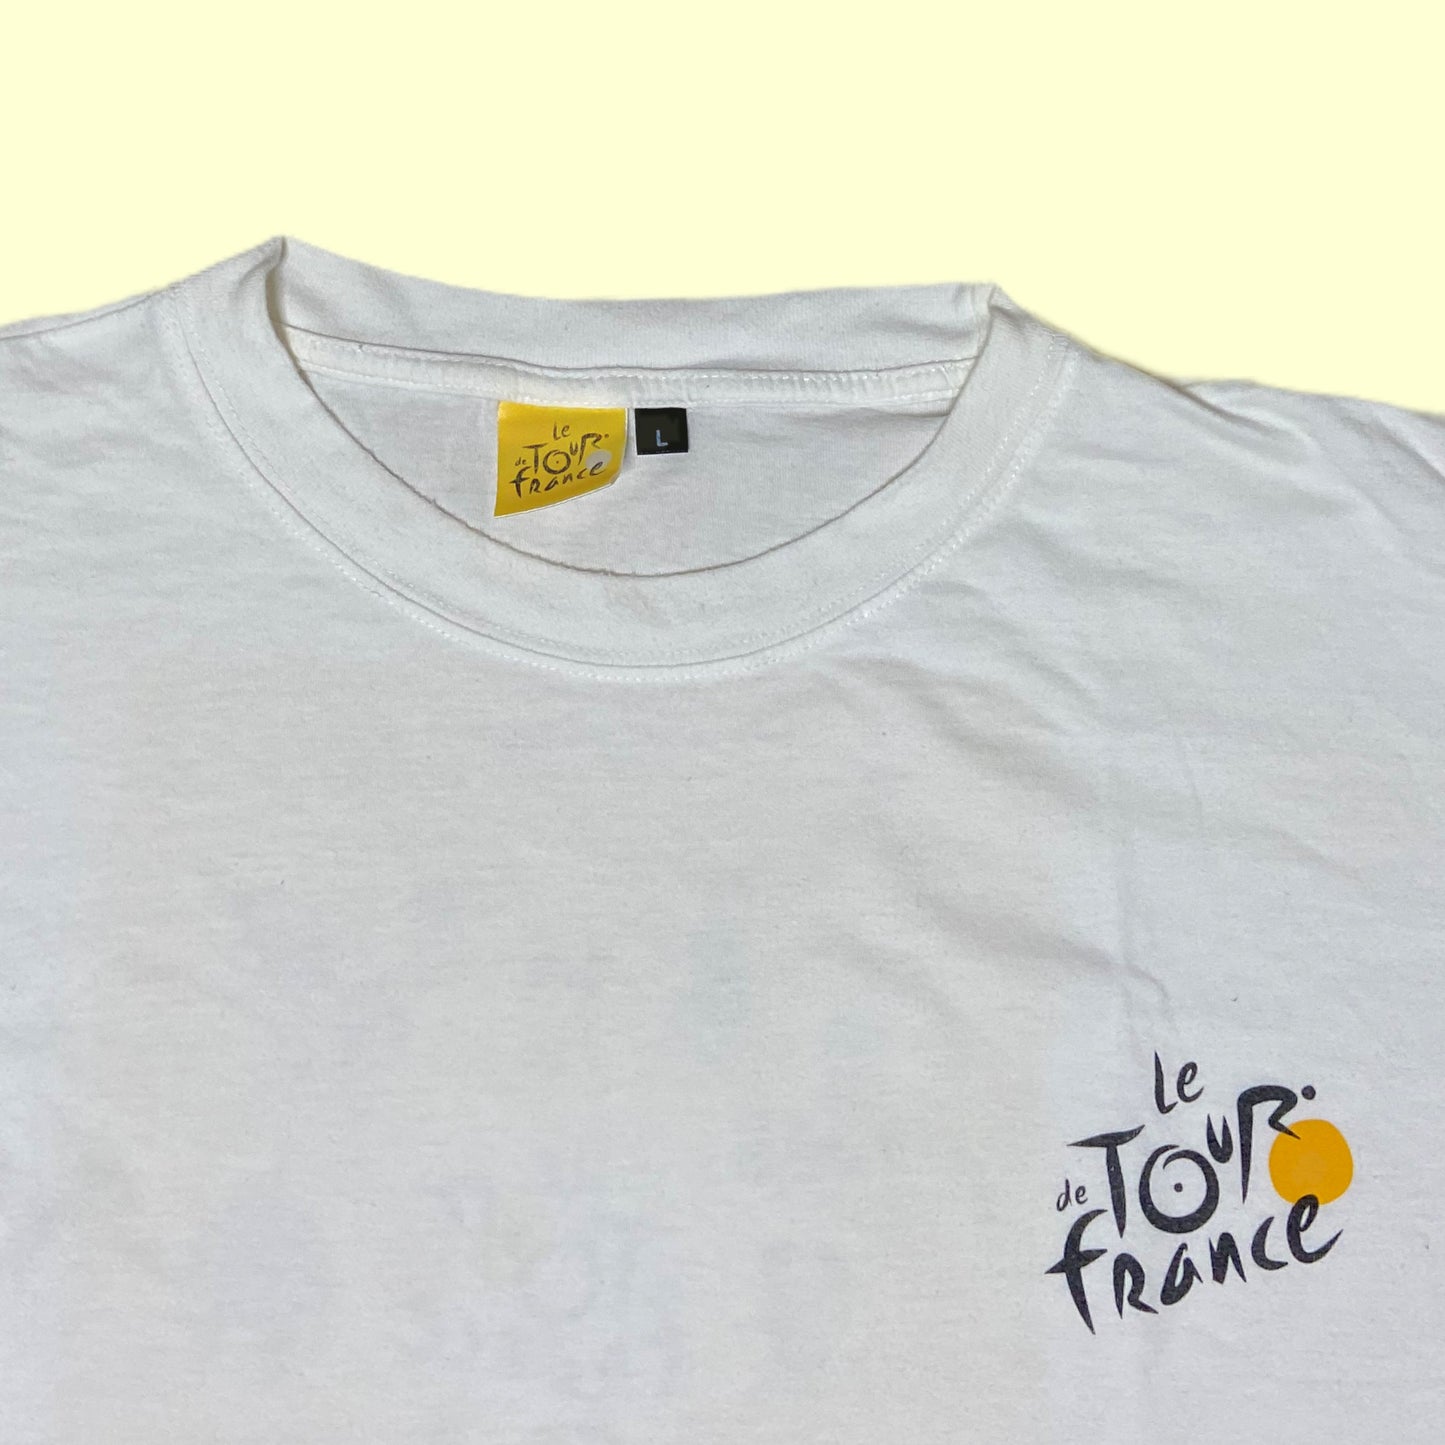 Tour de France 2003 T-Shirt - L